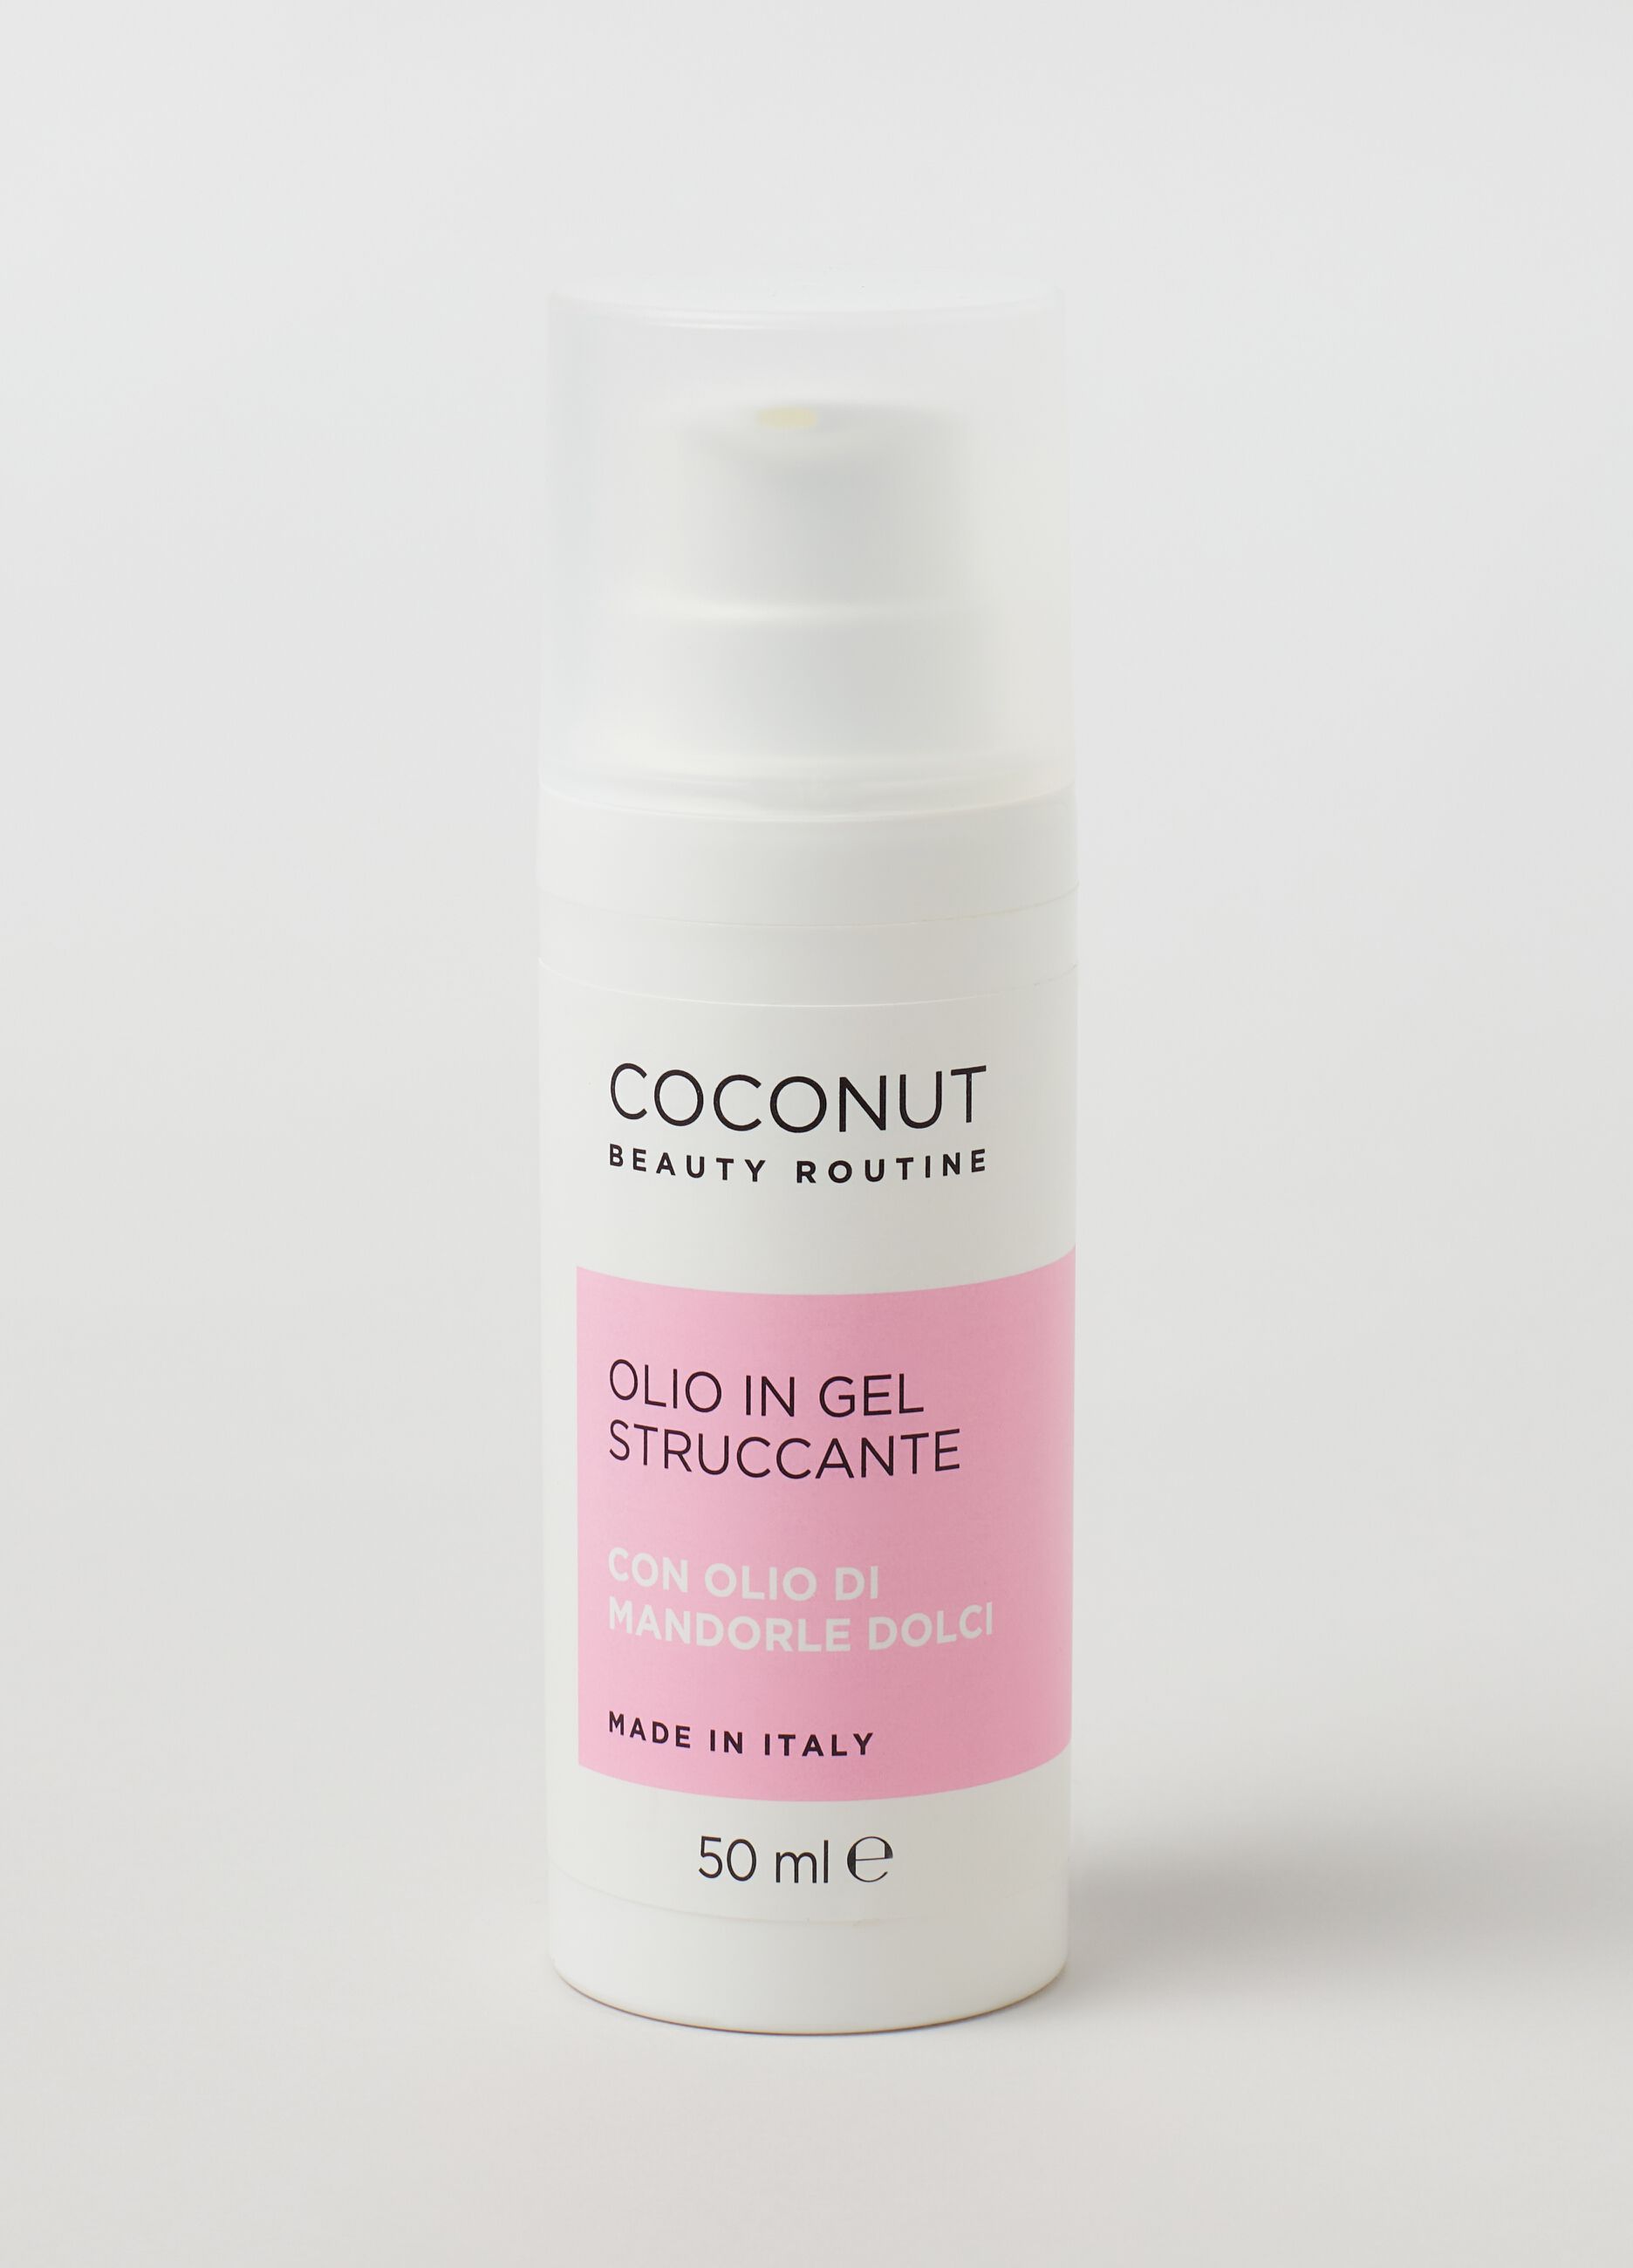 Make-up removal gel oil